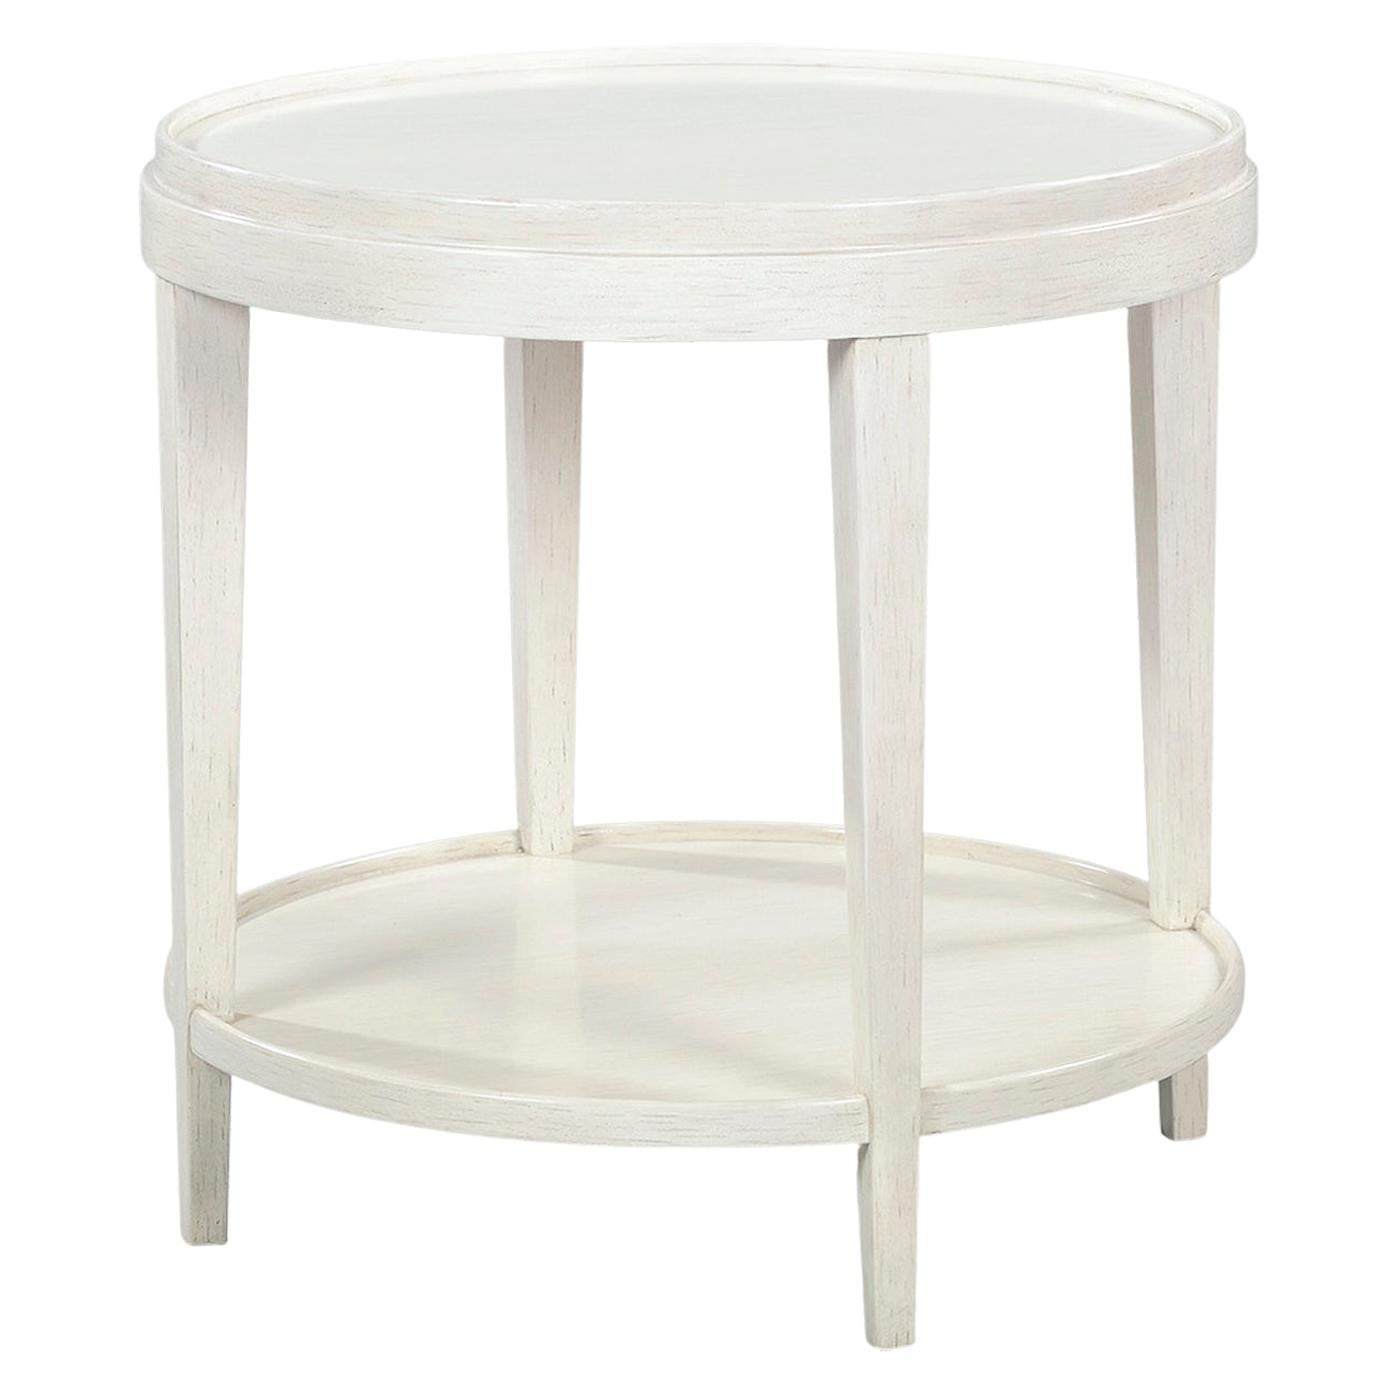 Table d'extrémité ronde classique, blanc vieillie